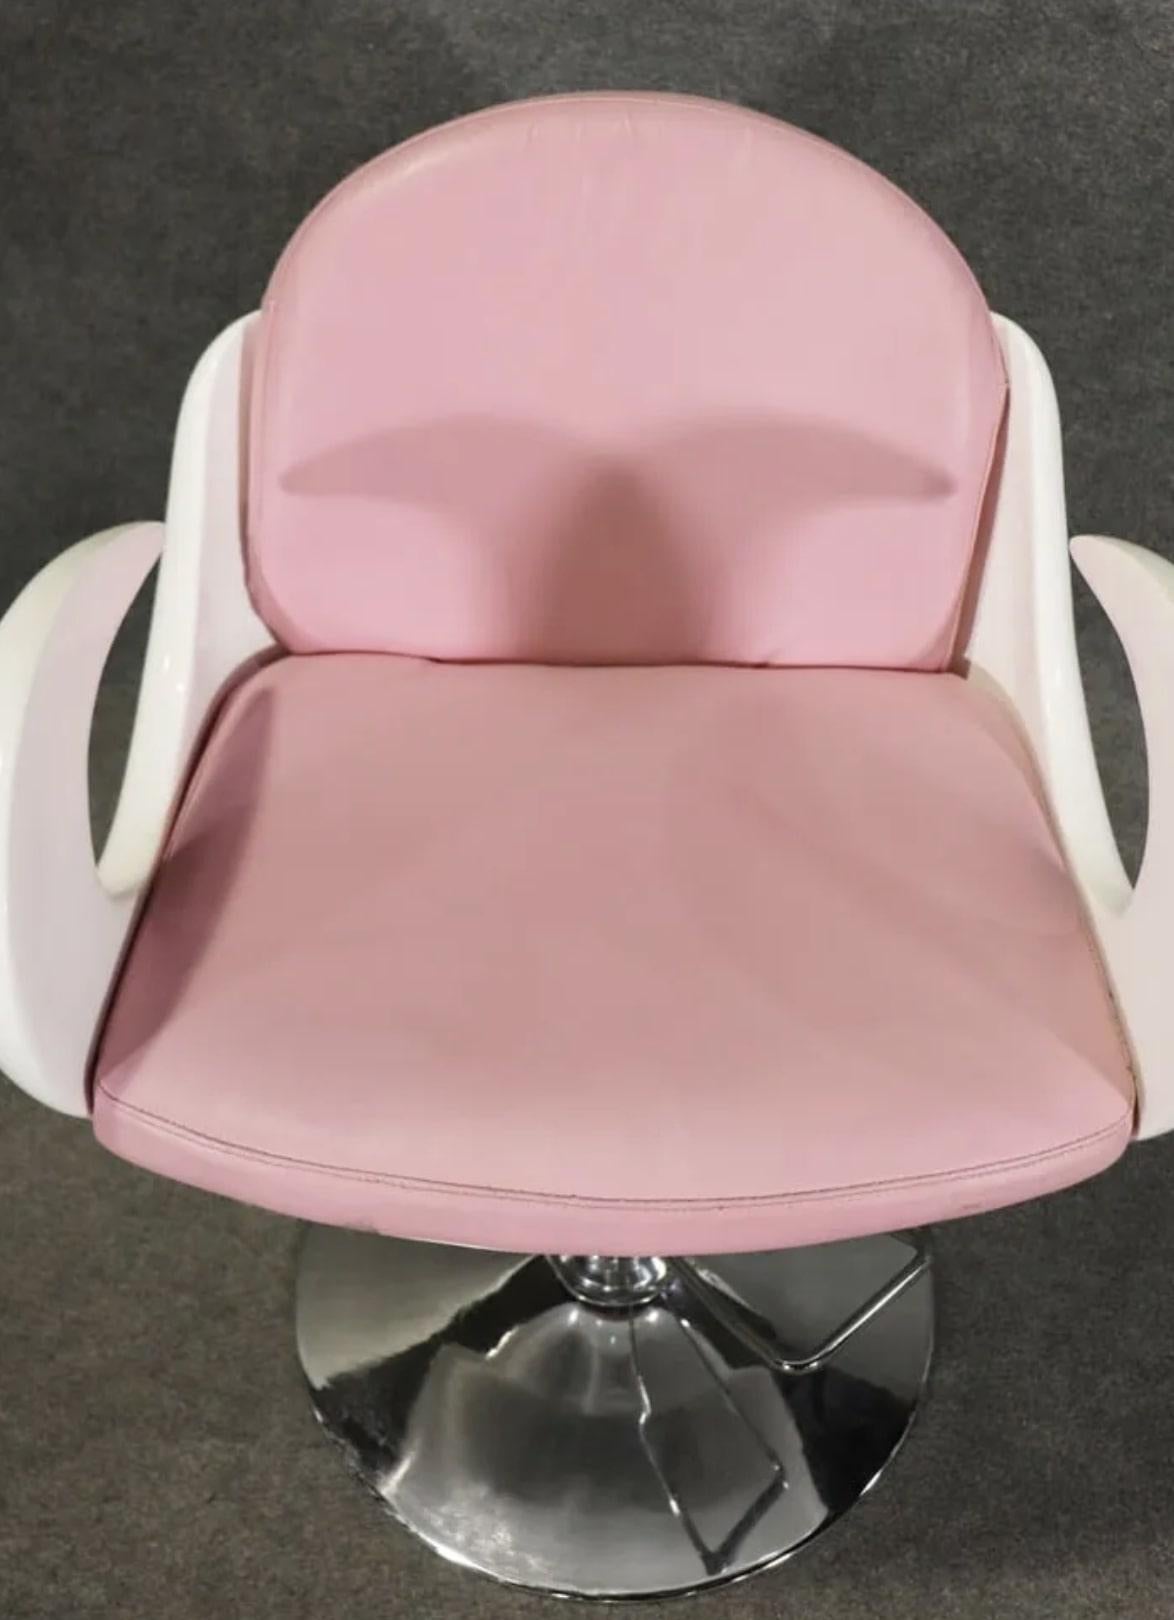 Rare fauteuil de barbier de Carven avec accoudoirs courbés et assise rose.
Veuillez confirmer le lieu NY ou NJ